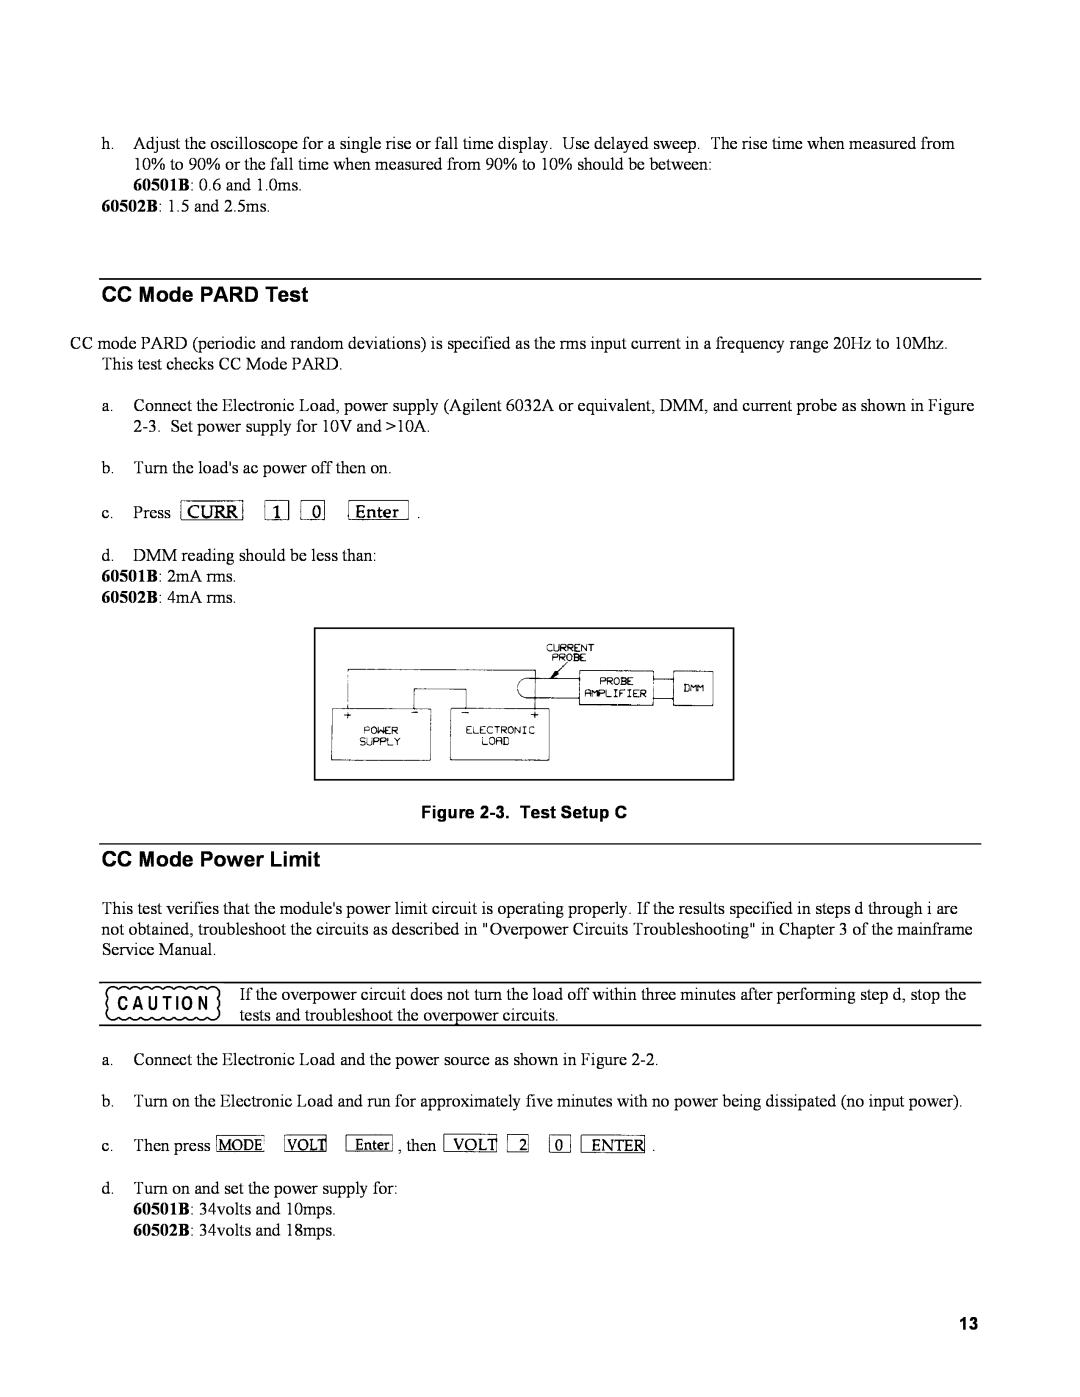 Agilent Technologies 60502B, 60501B service manual CC Mode PARD Test, CC Mode Power Limit, 3. Test Setup C 